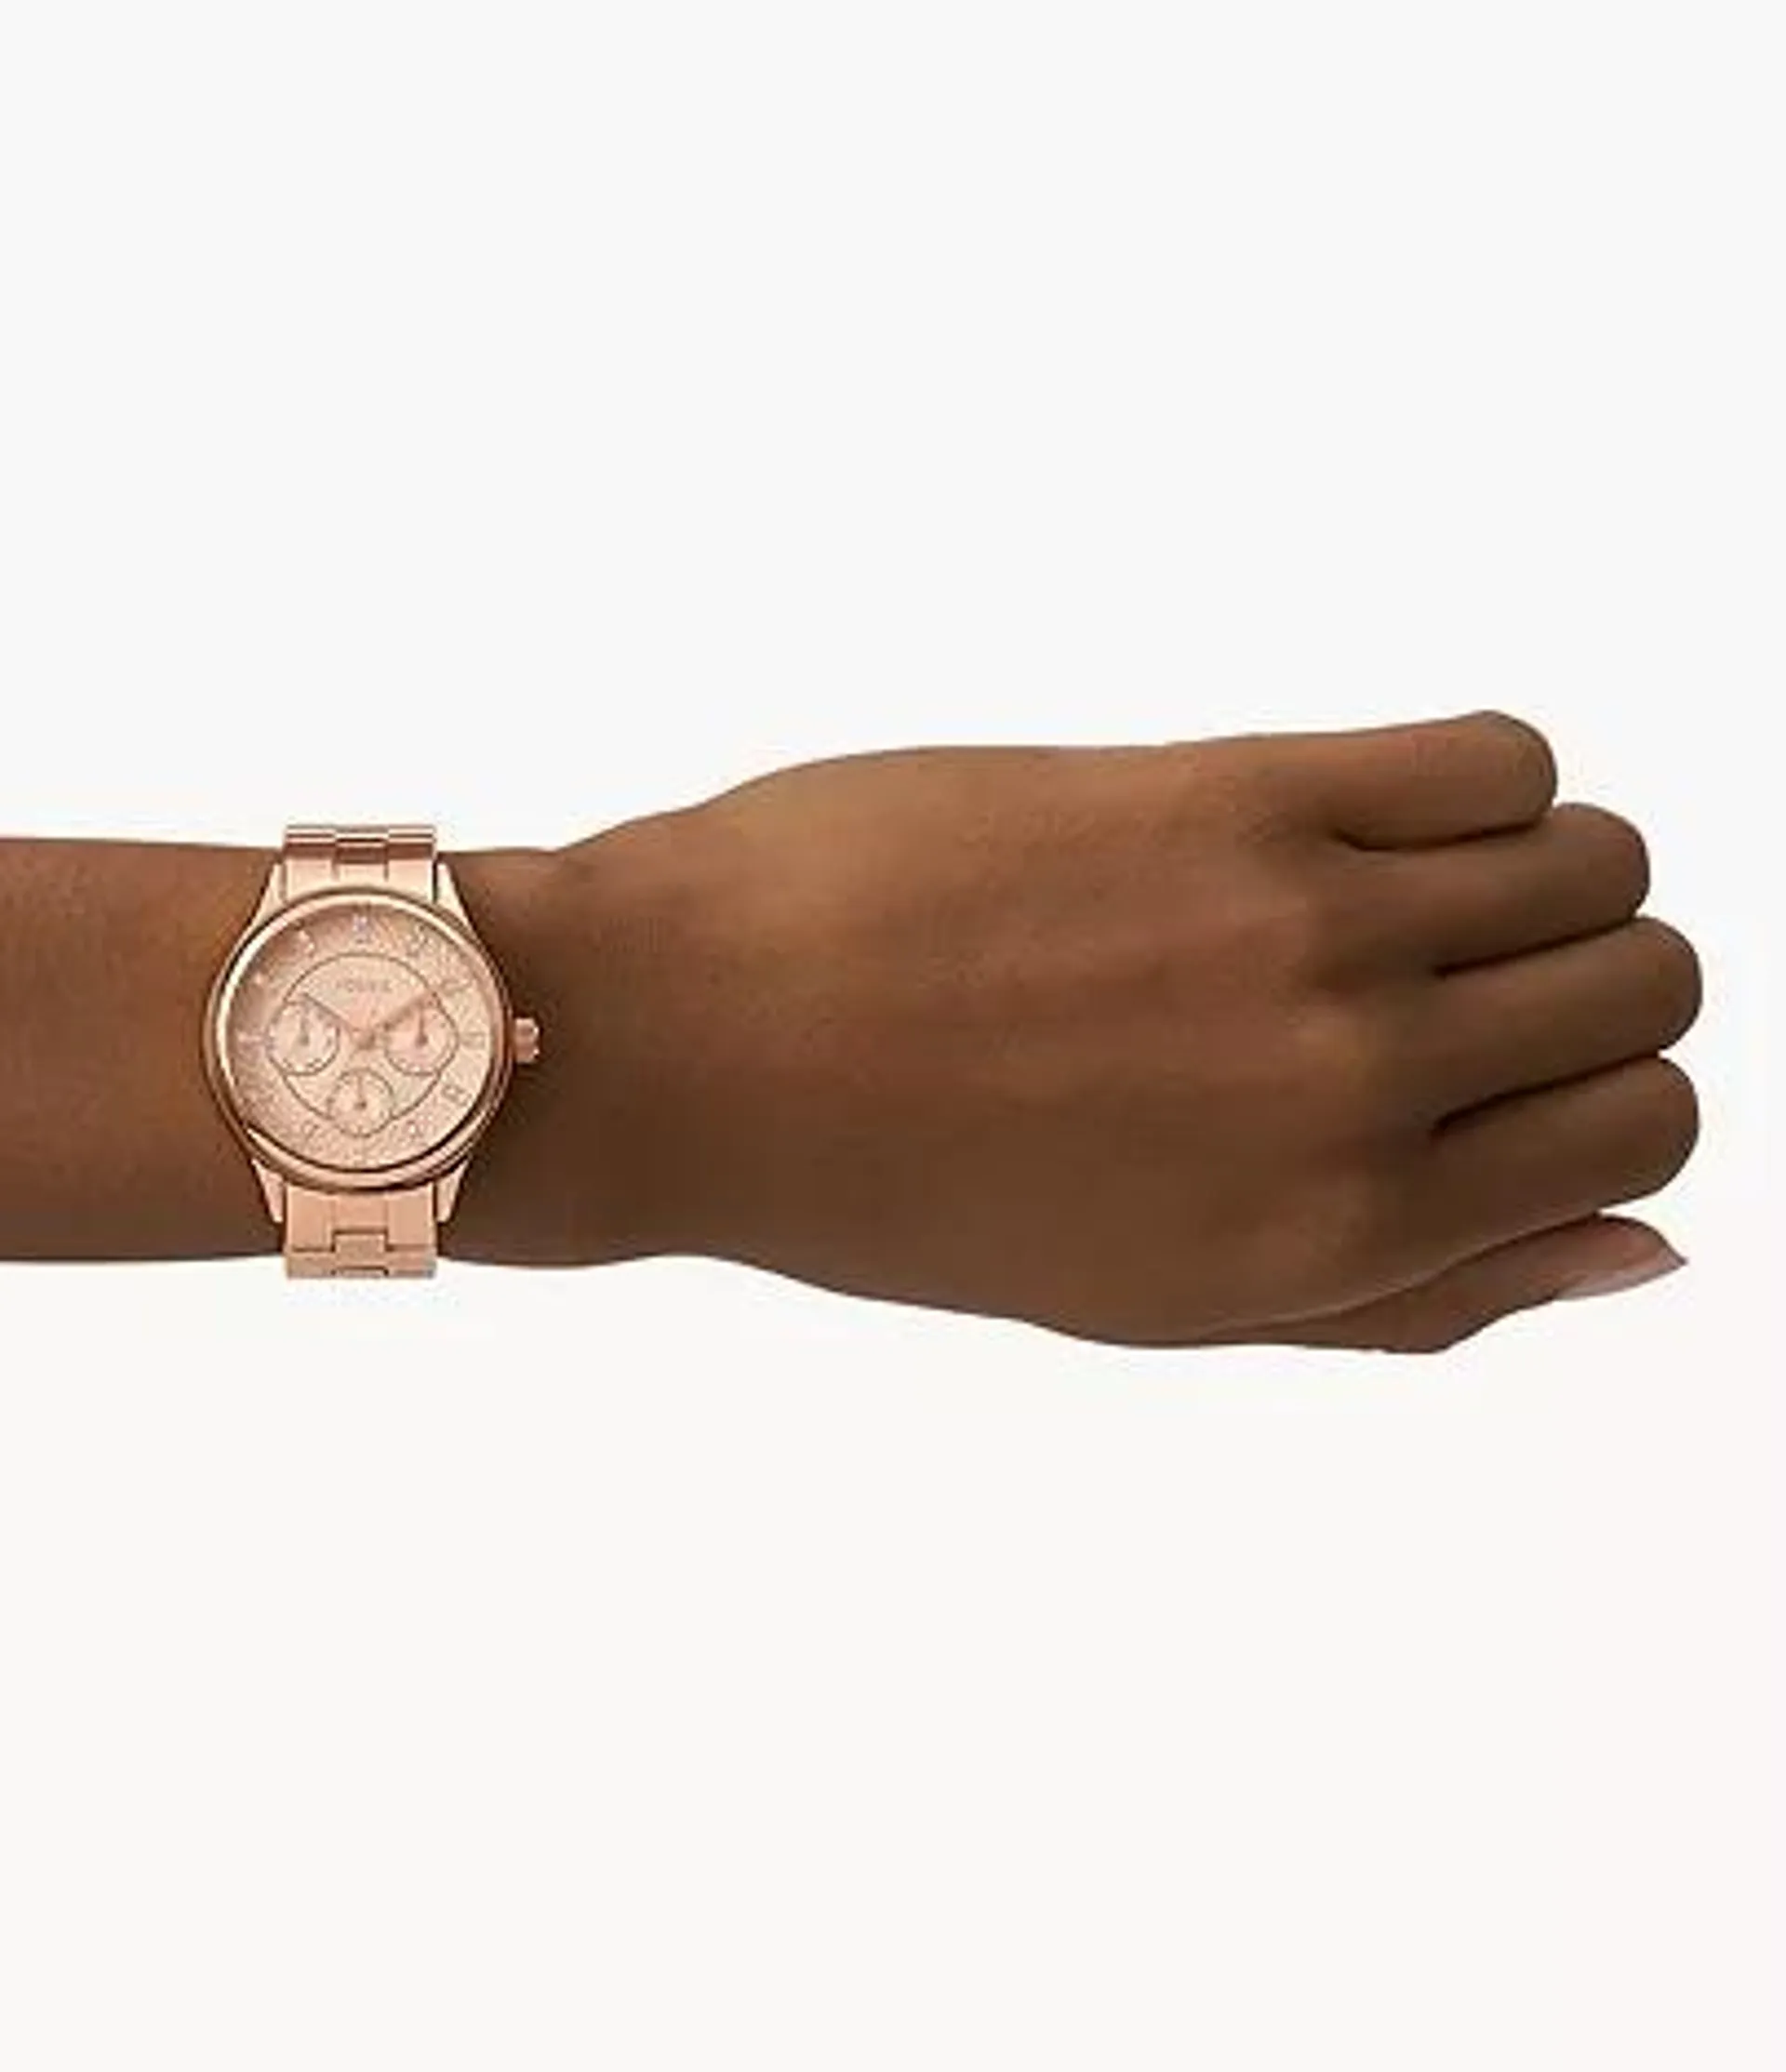 Reloj Modern Sophisticate de acero inoxidable en tono oro rosa con movimiento multifunción